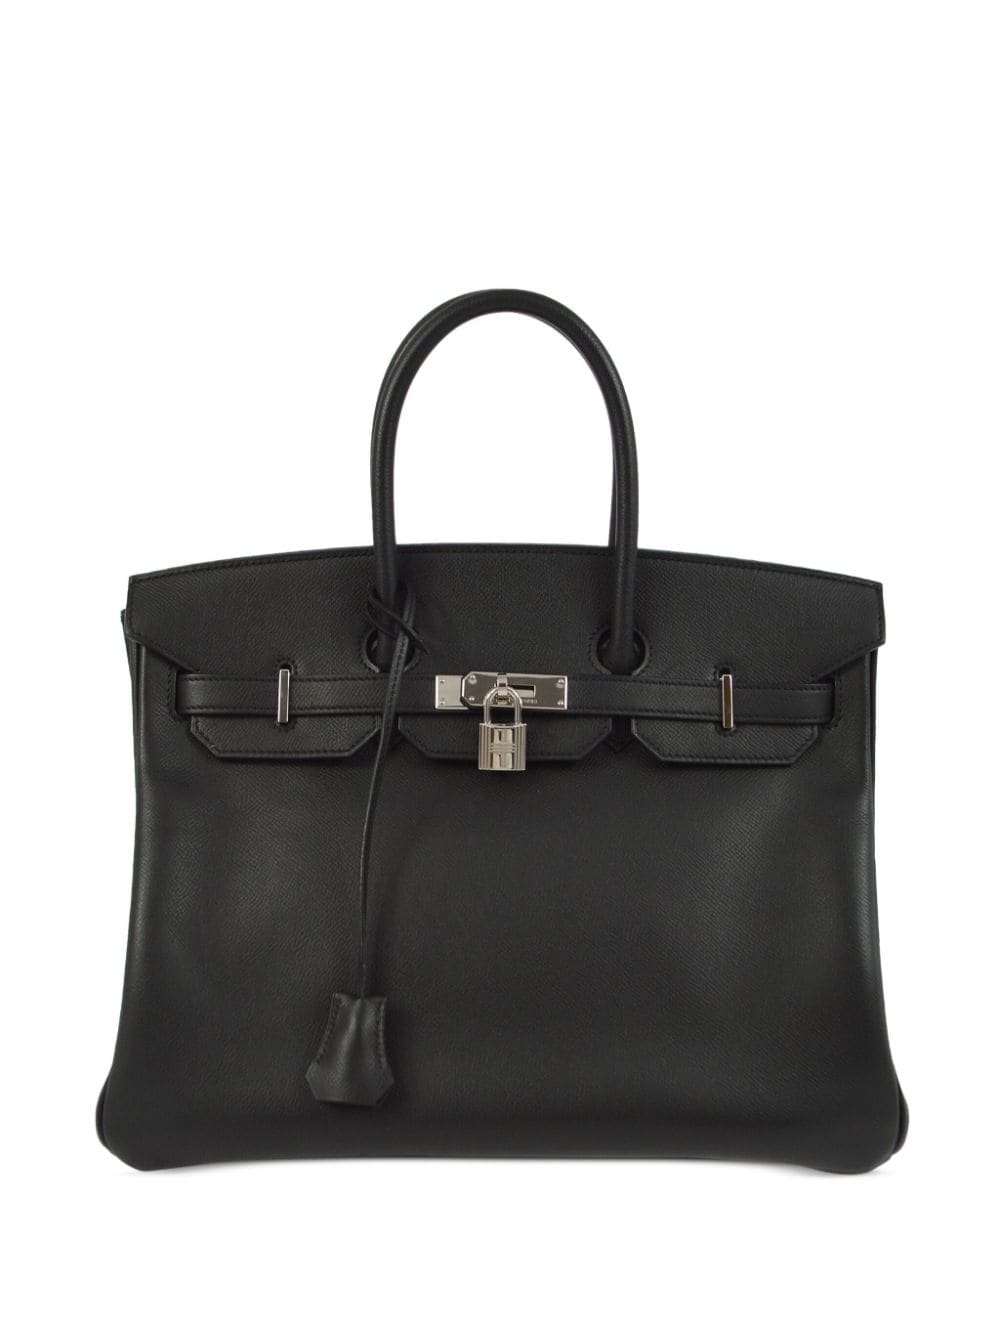 Pre-owned Hermes 2010 Birkin 35 Handbag In Black